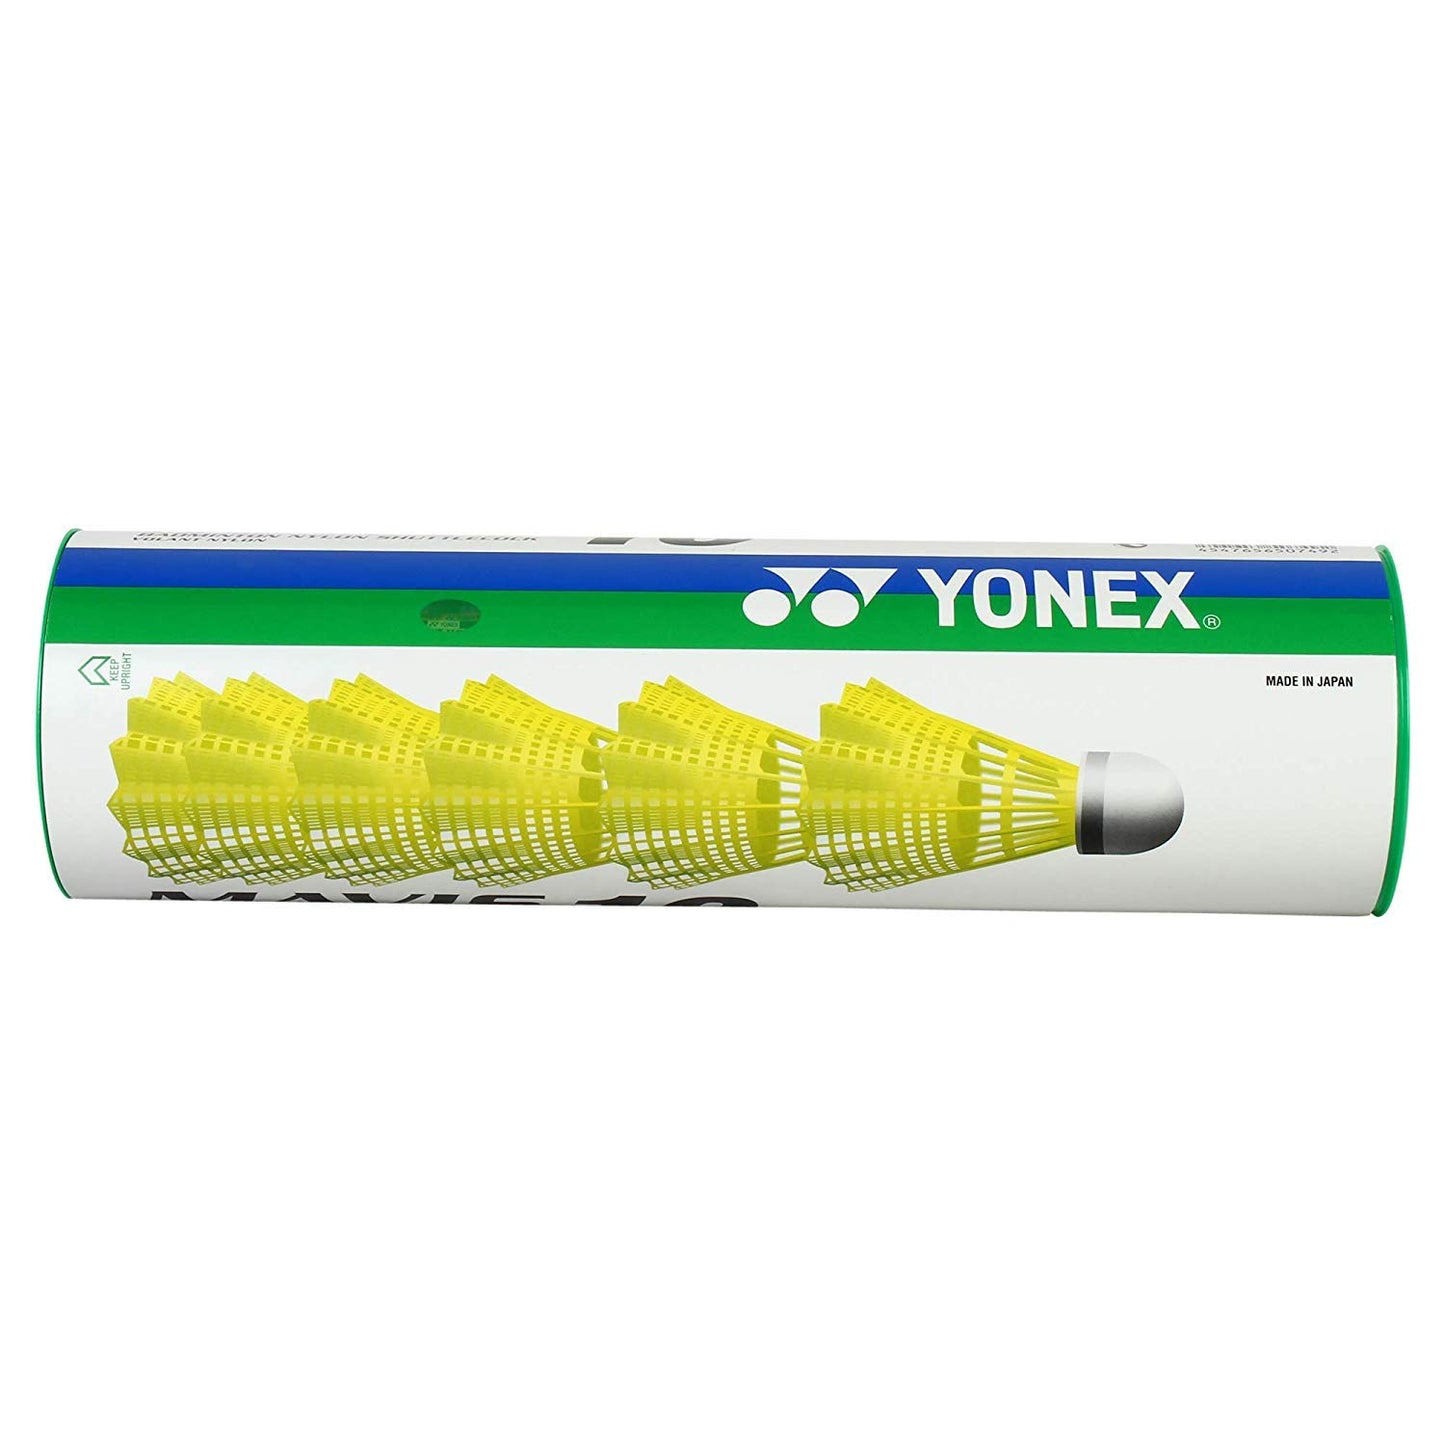 Yonex Mavis 10 Shuttle Cock (Yellow) - Green Cap (2 cans) - Best Price online Prokicksports.com